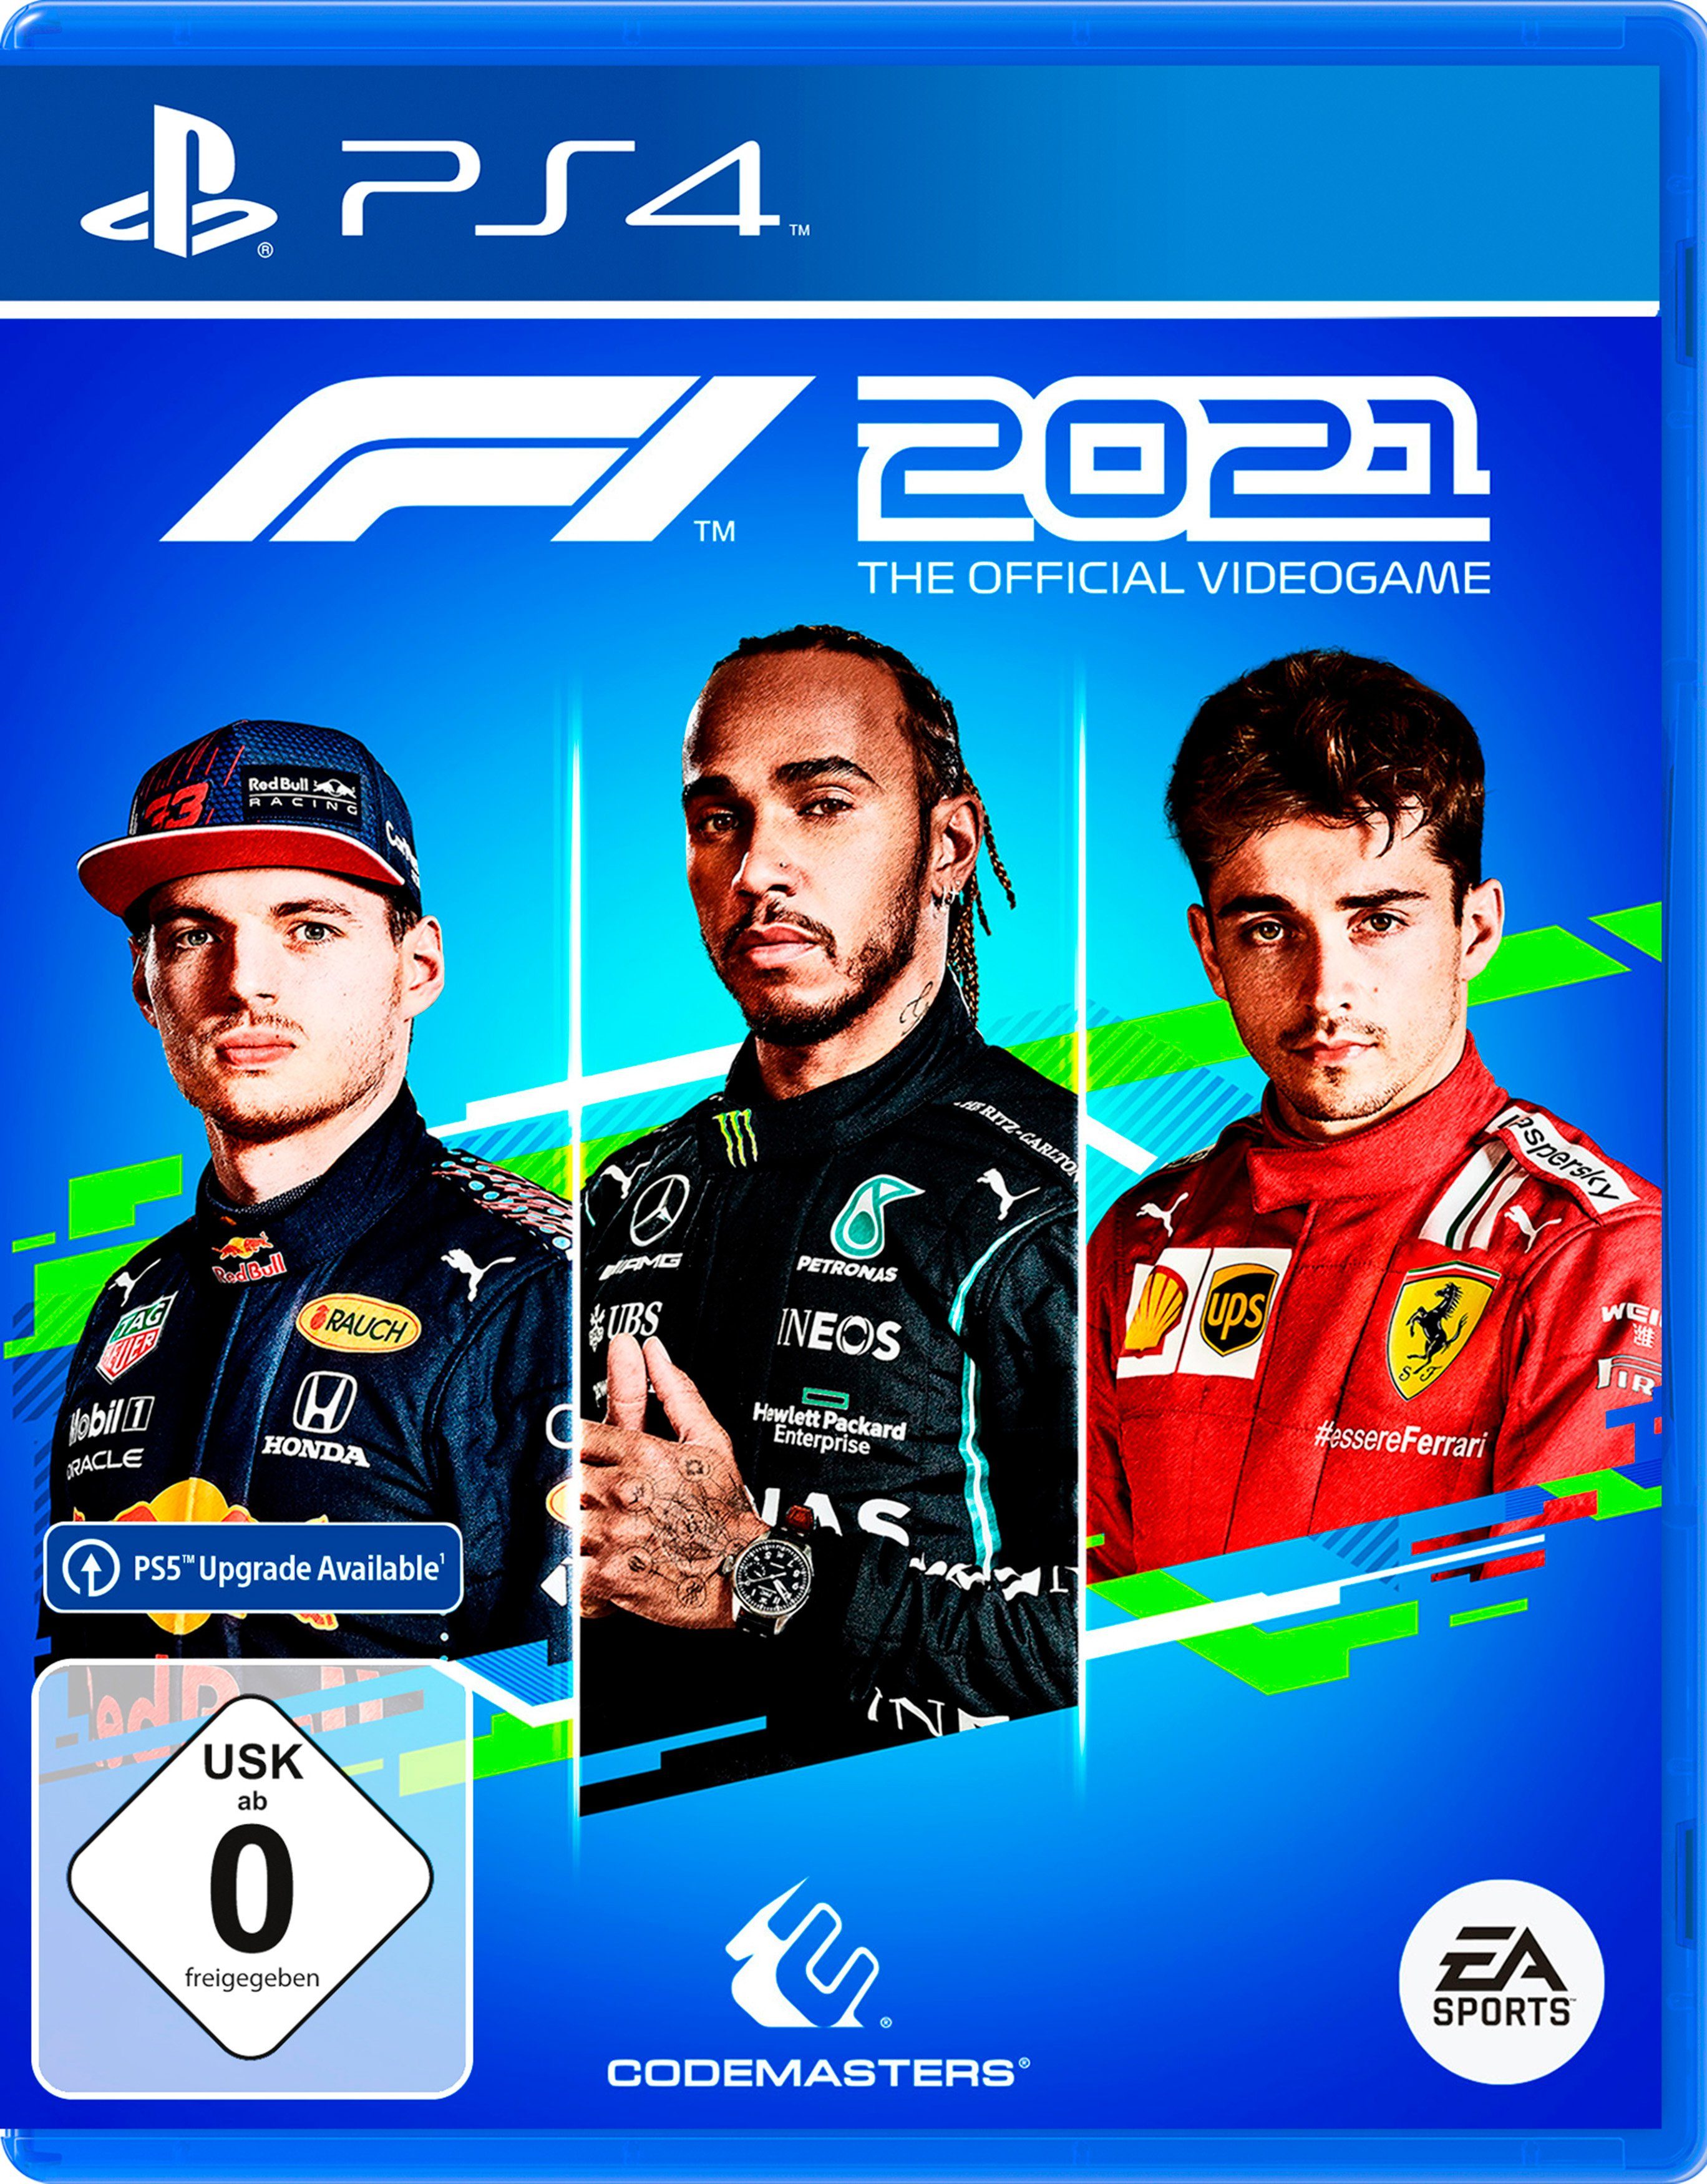 F1® Die Formel PlayStation PlayStation 2021 4, zu F1 kehrt zurück 2021 mit 1®